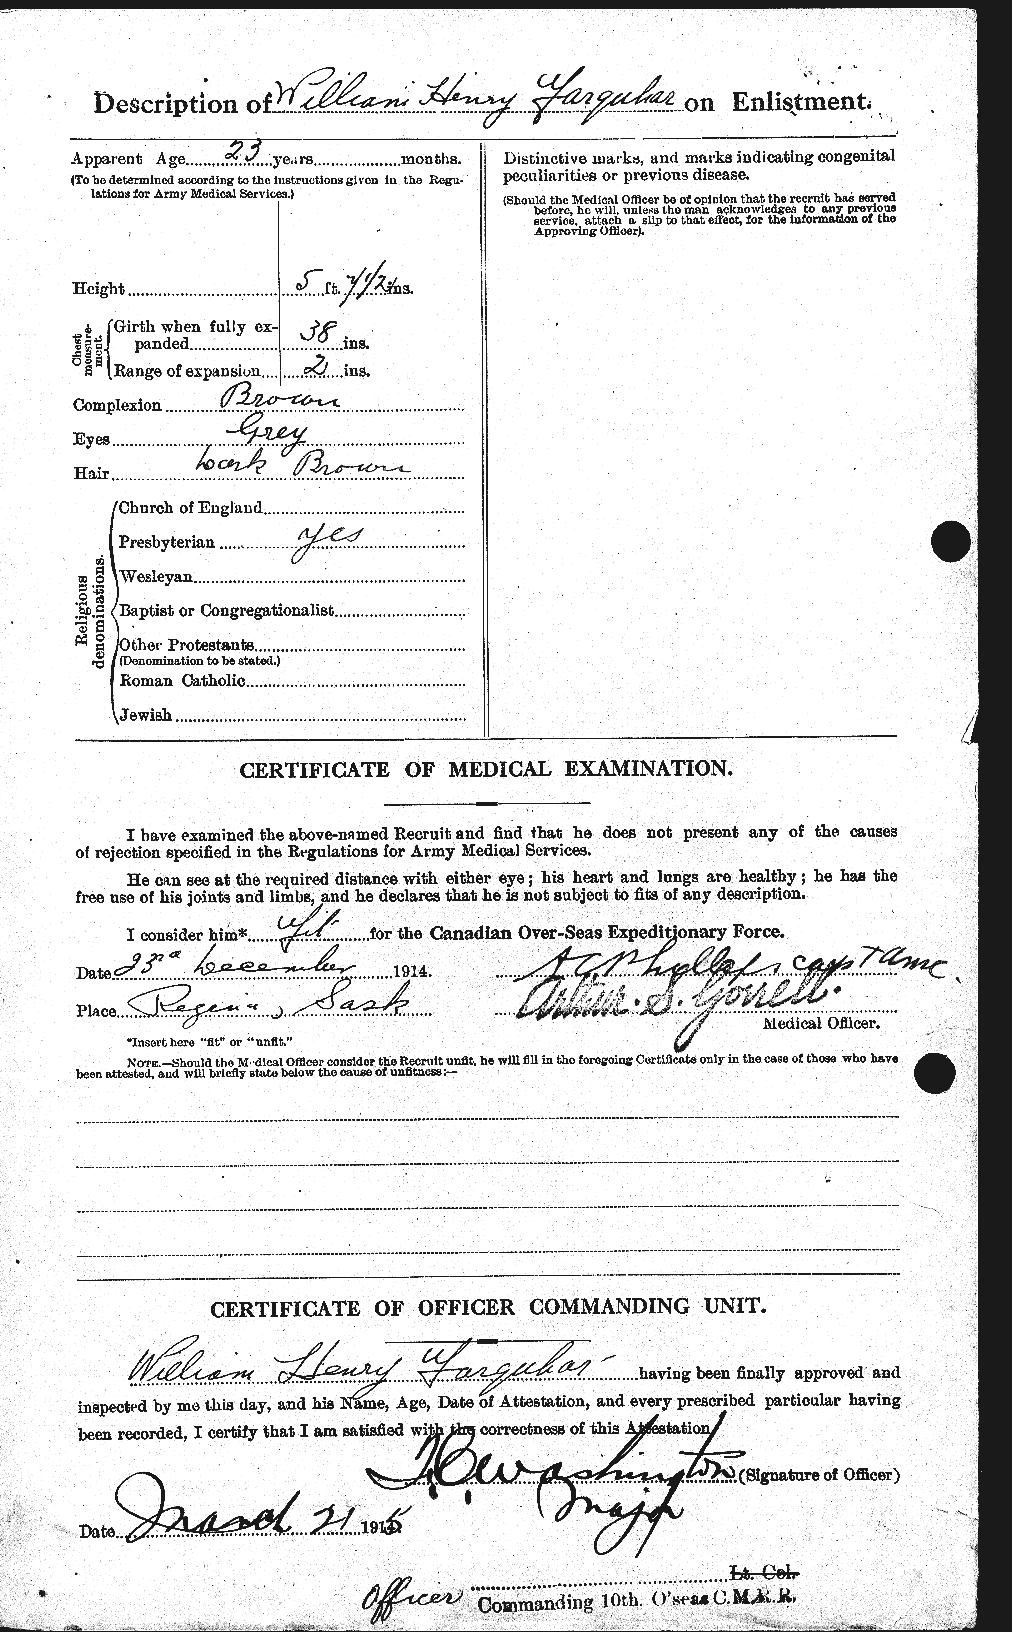 Dossiers du Personnel de la Première Guerre mondiale - CEC 319285b